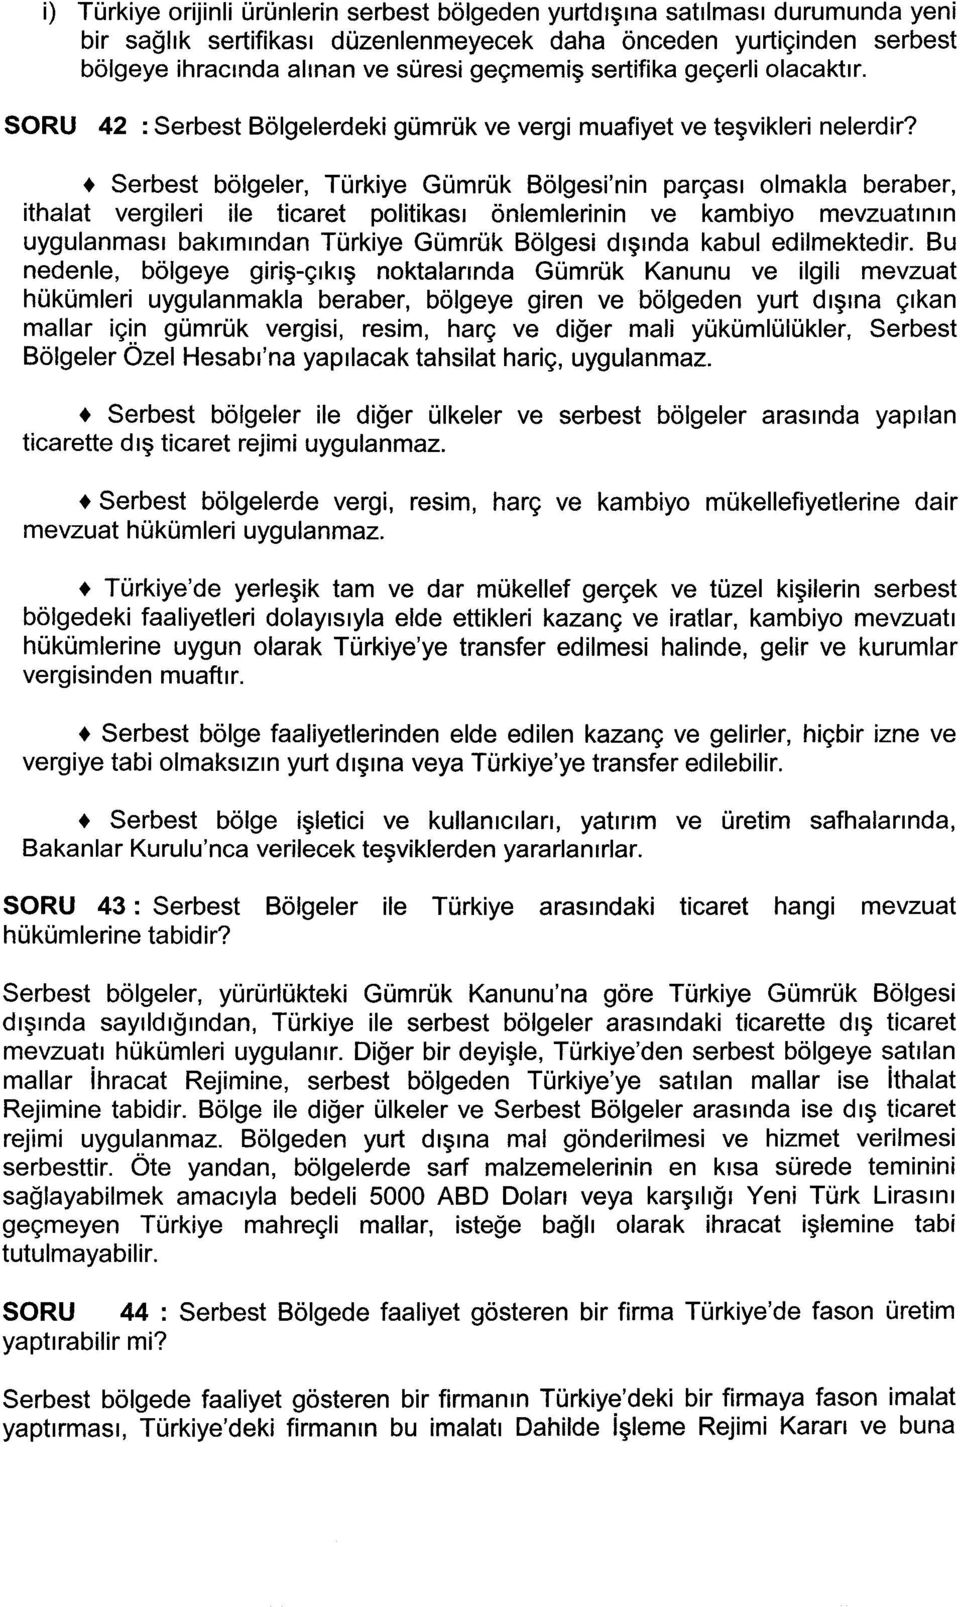 + Serbest bölgeler, Türkiye Gümrük Bölgesi'nin parçası olmakla beraber, ithalat vergileri ile ticaret politikası önlemlerinin ve kambiyo mevzuatının uygulanması bakımından Türkiye Gümrük Bölgesi